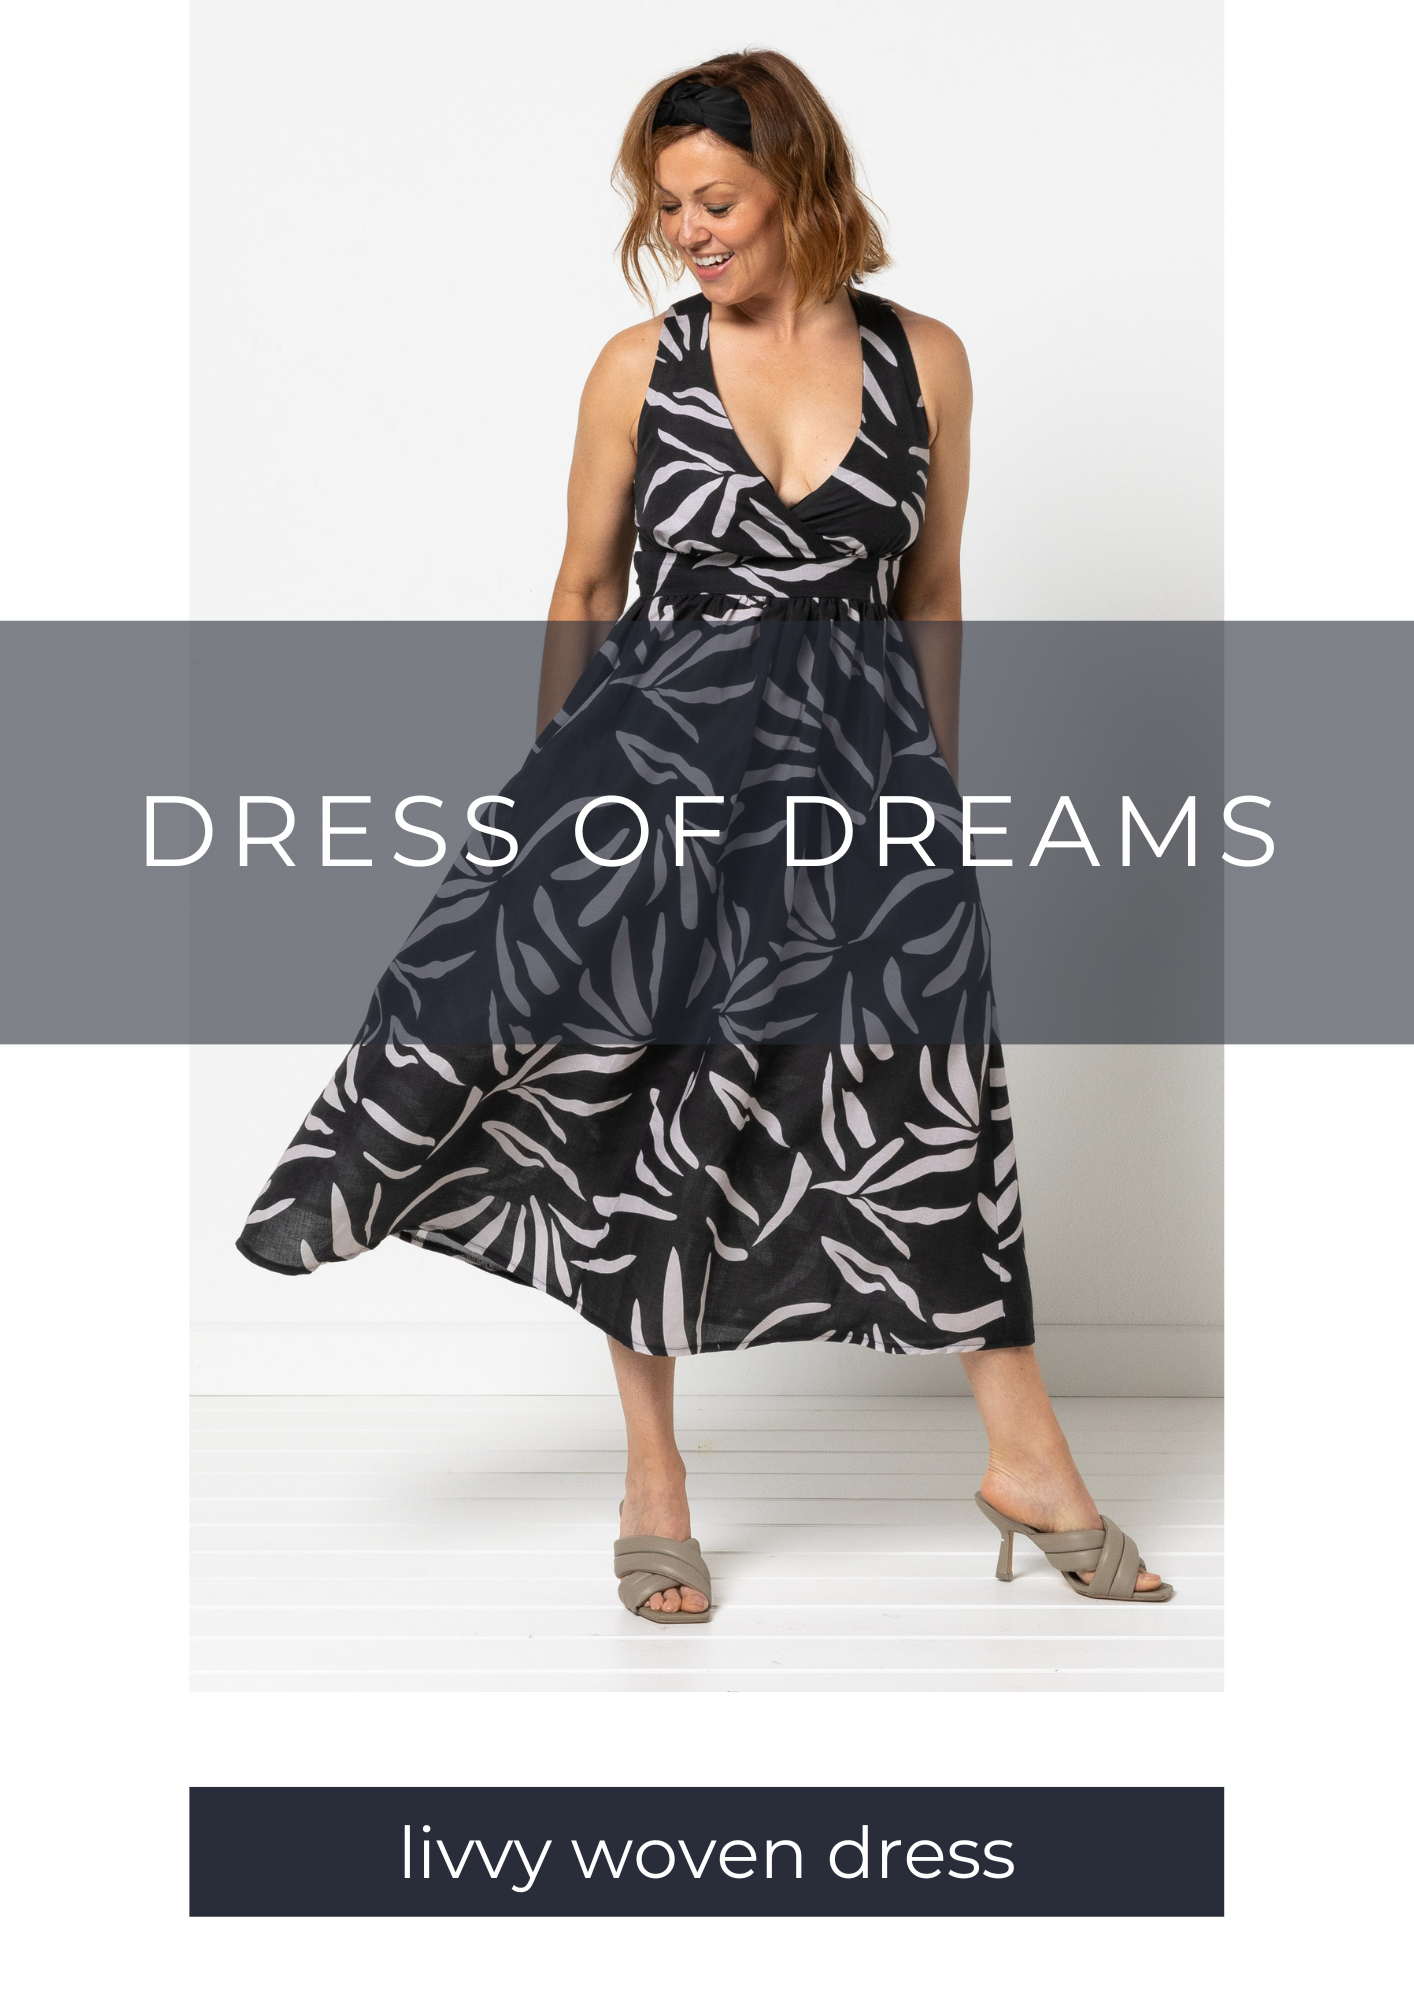 Meet the new Livvy Woven Dress Pattern!